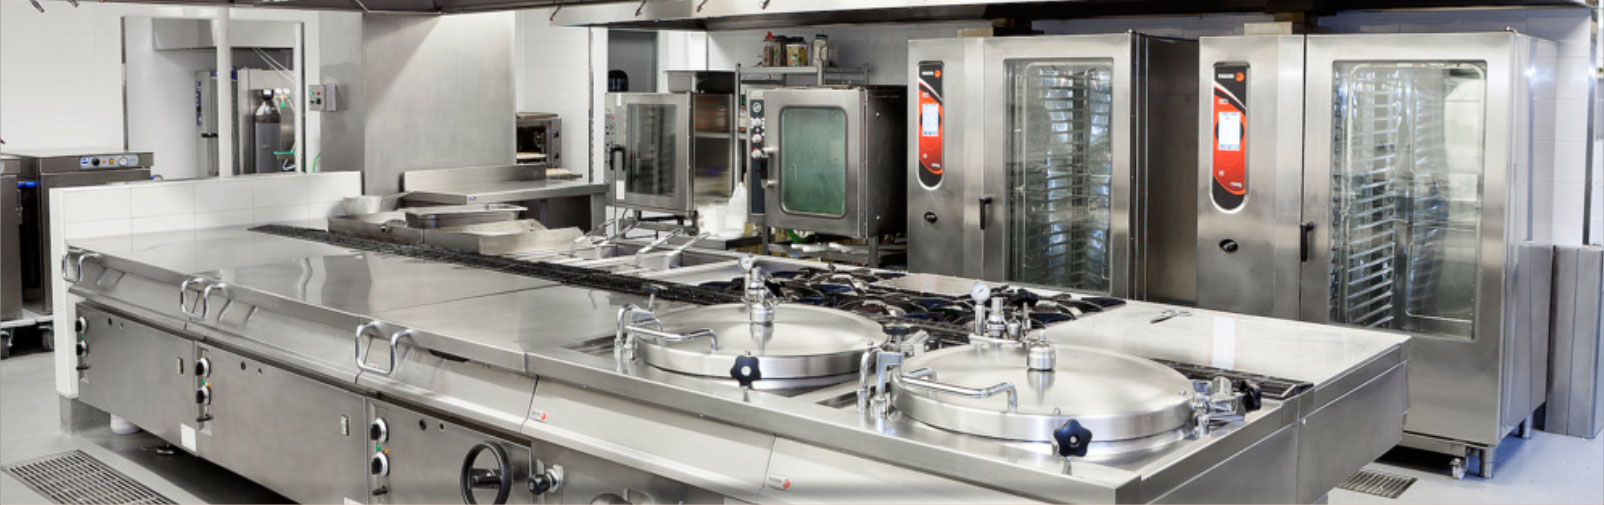 Commercial Kitchen Equipment Banner-Shree Manek Kitchen Equipments Pvt. Ltd.